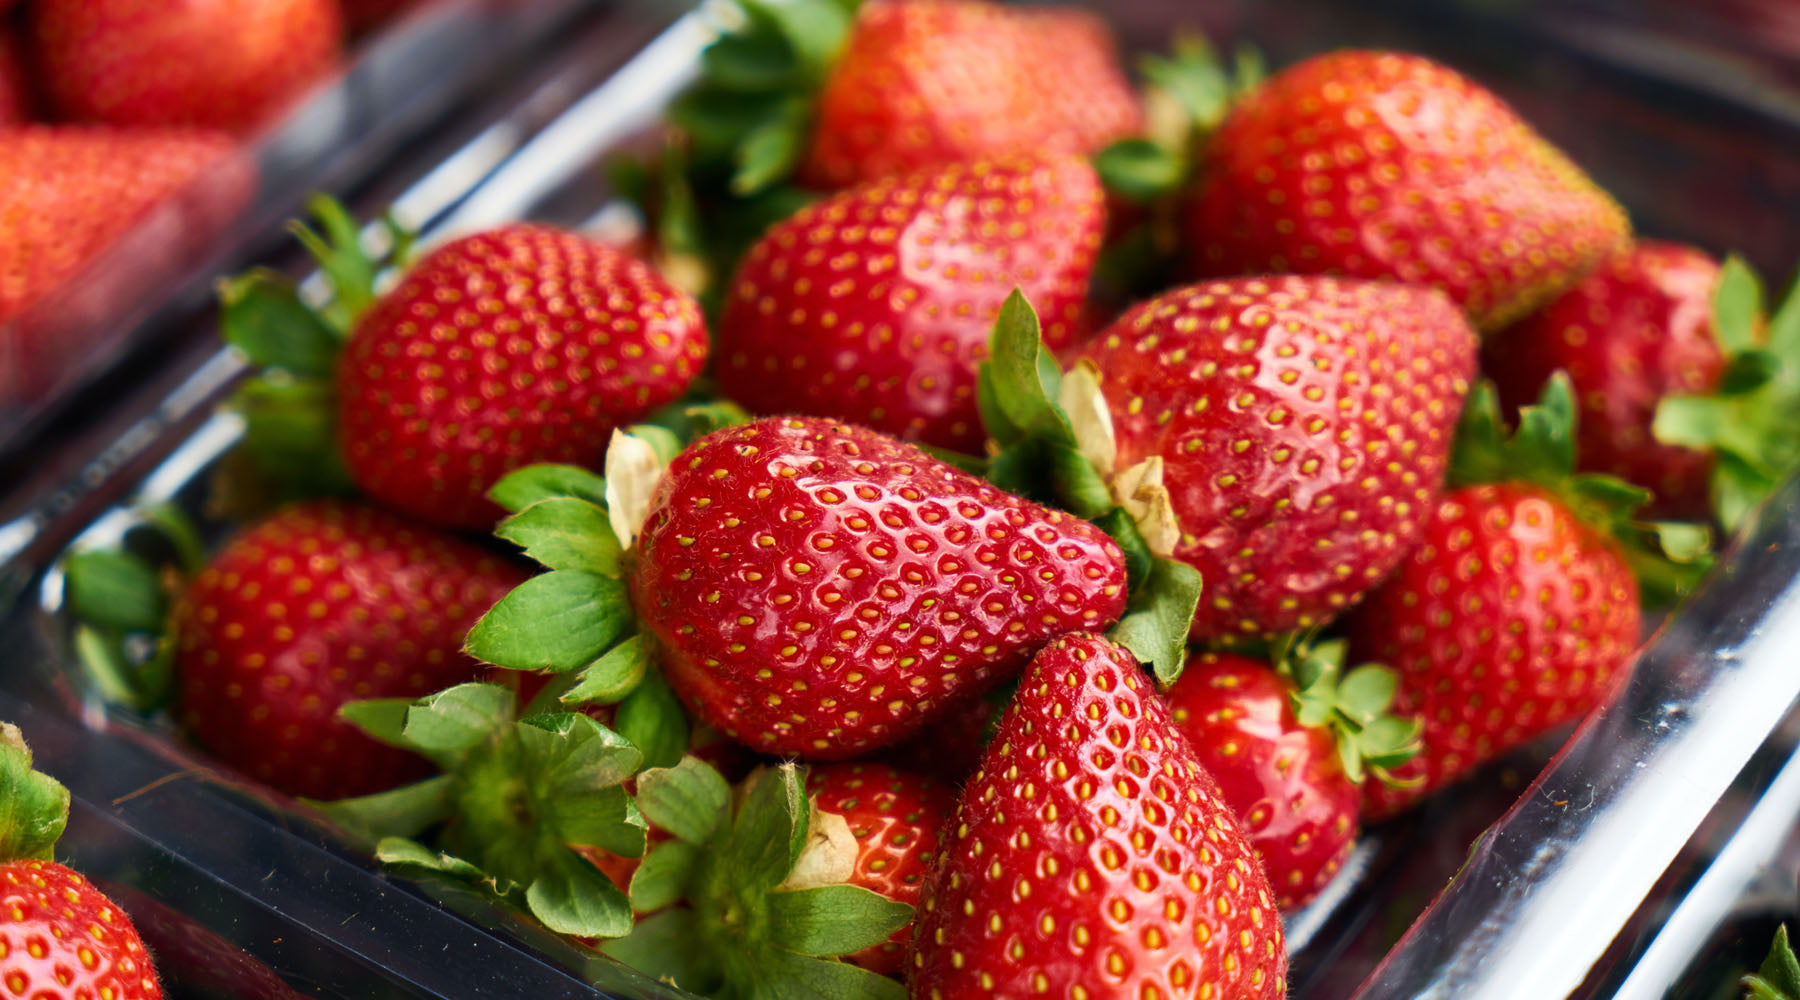 Strawberry Kiwi Smoothie Recipe